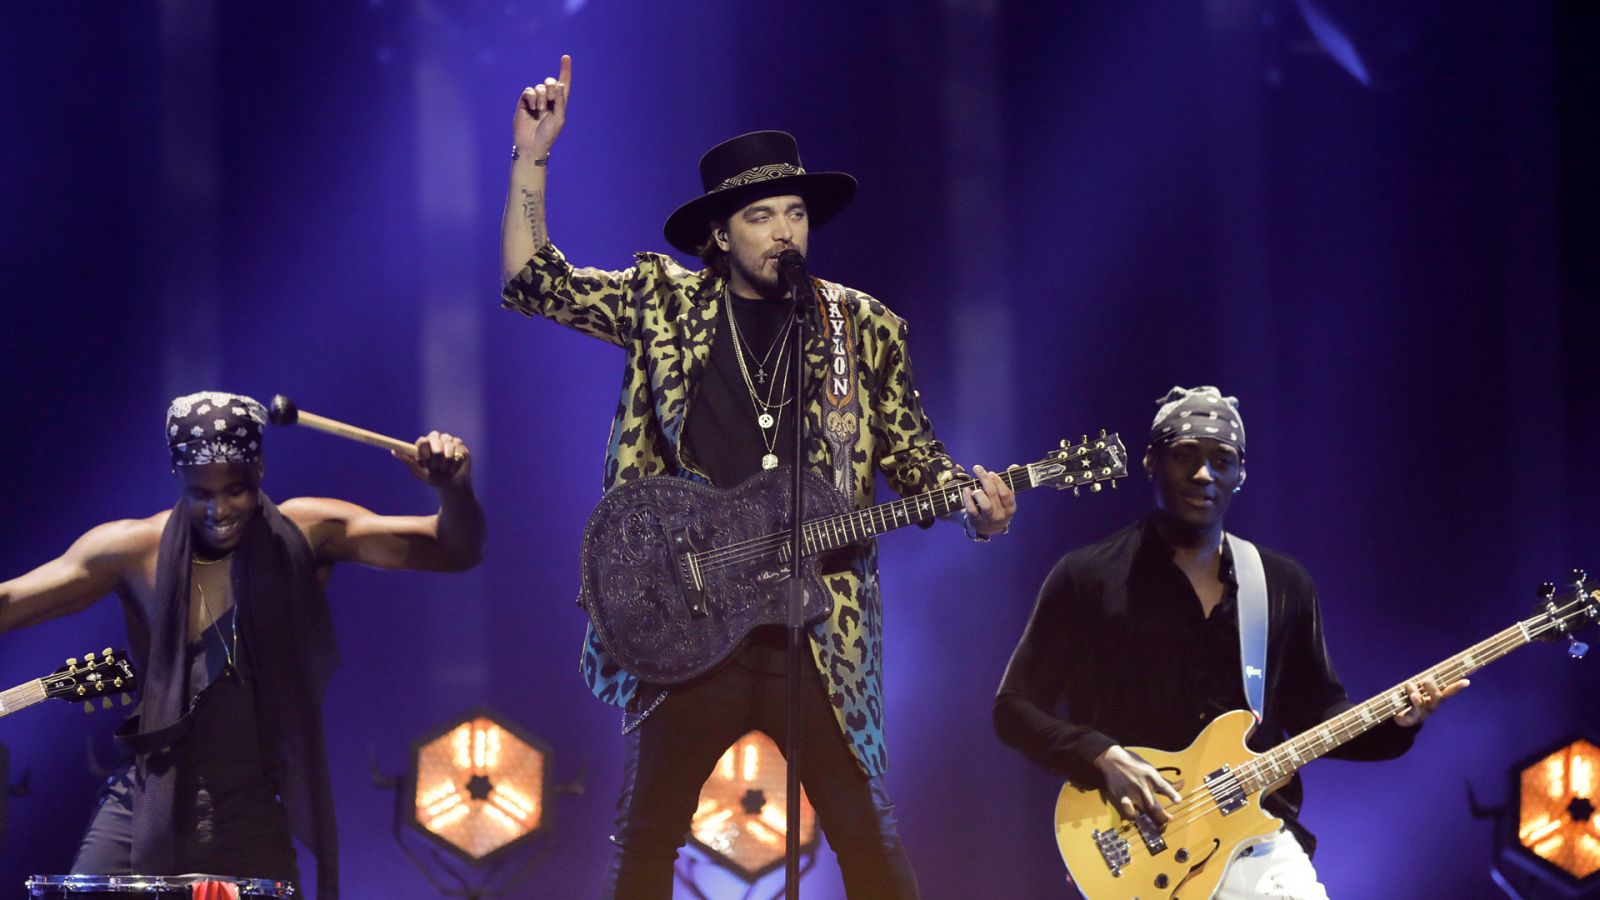 Eurovisión - Países Bajos: Waylon cantará "Outlaw in 'em'" en la segunda semifinal de Eurovisión 2018